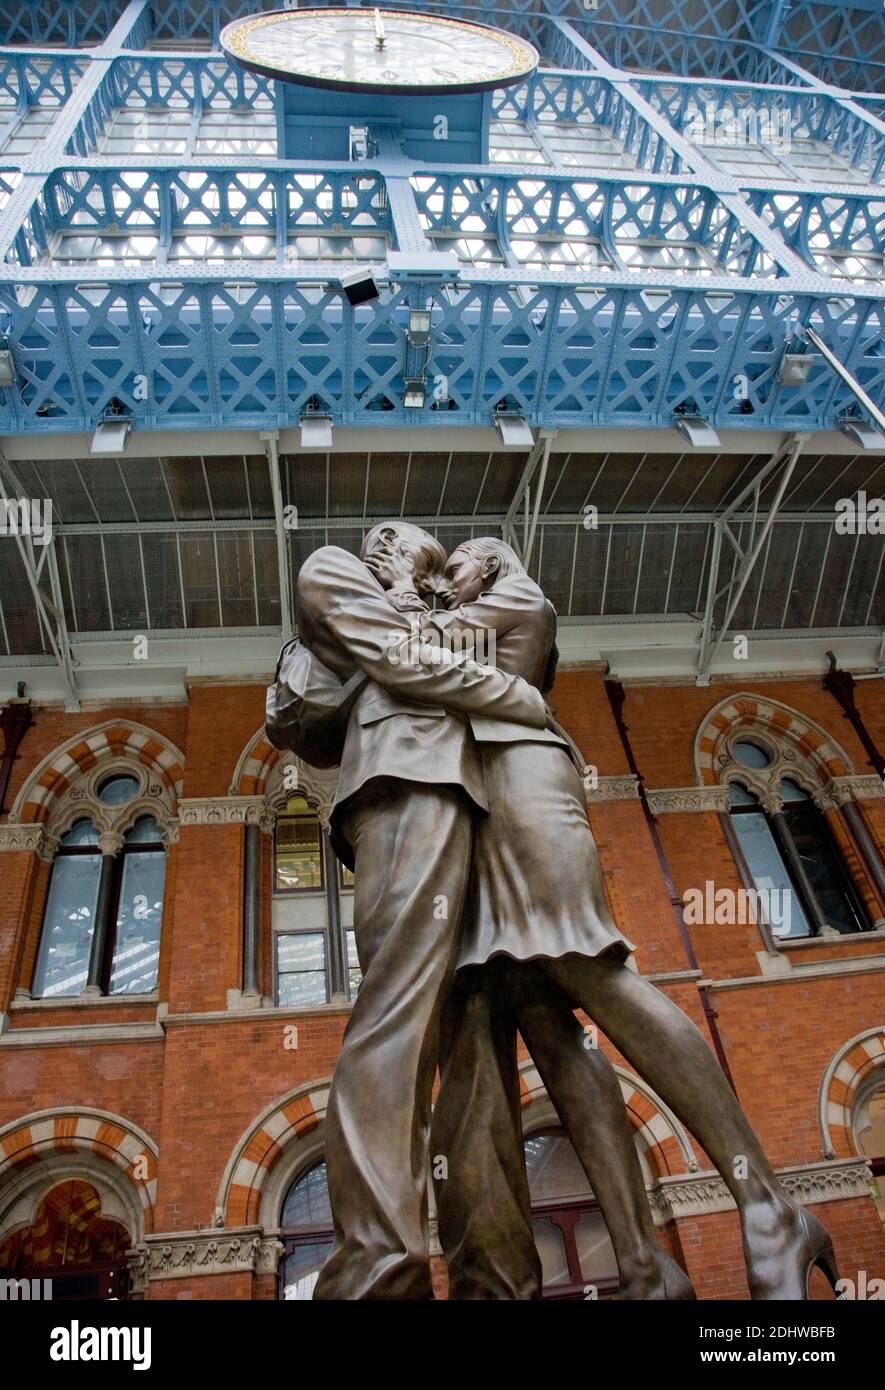 La sculpture de Paul Day d'embrasser le couple « The Meeting place » à la gare de St Pancras à Londres sous l'horloge où des générations de couples ont partié Banque D'Images